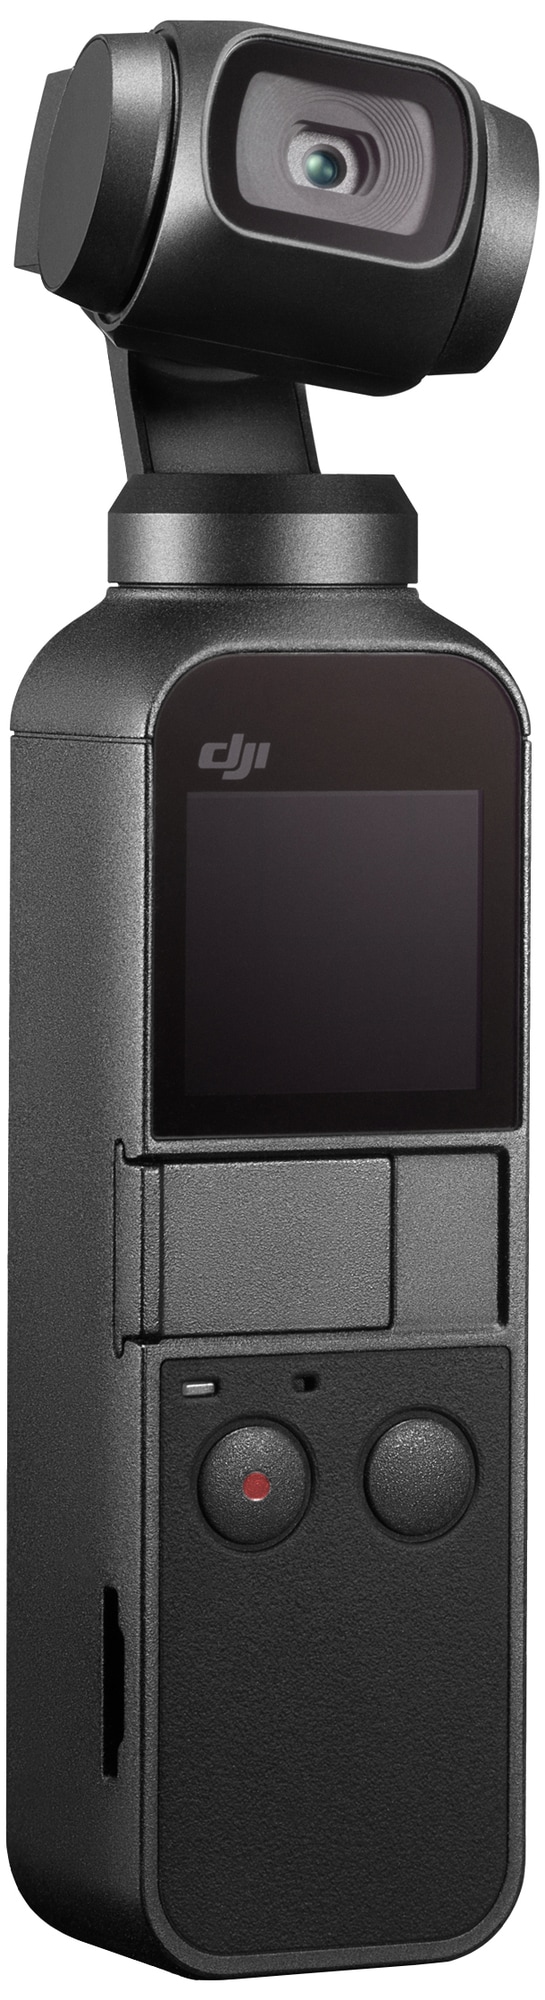 DJI Osmo Pocket håndholdt kamera - Action kamera - Elgiganten